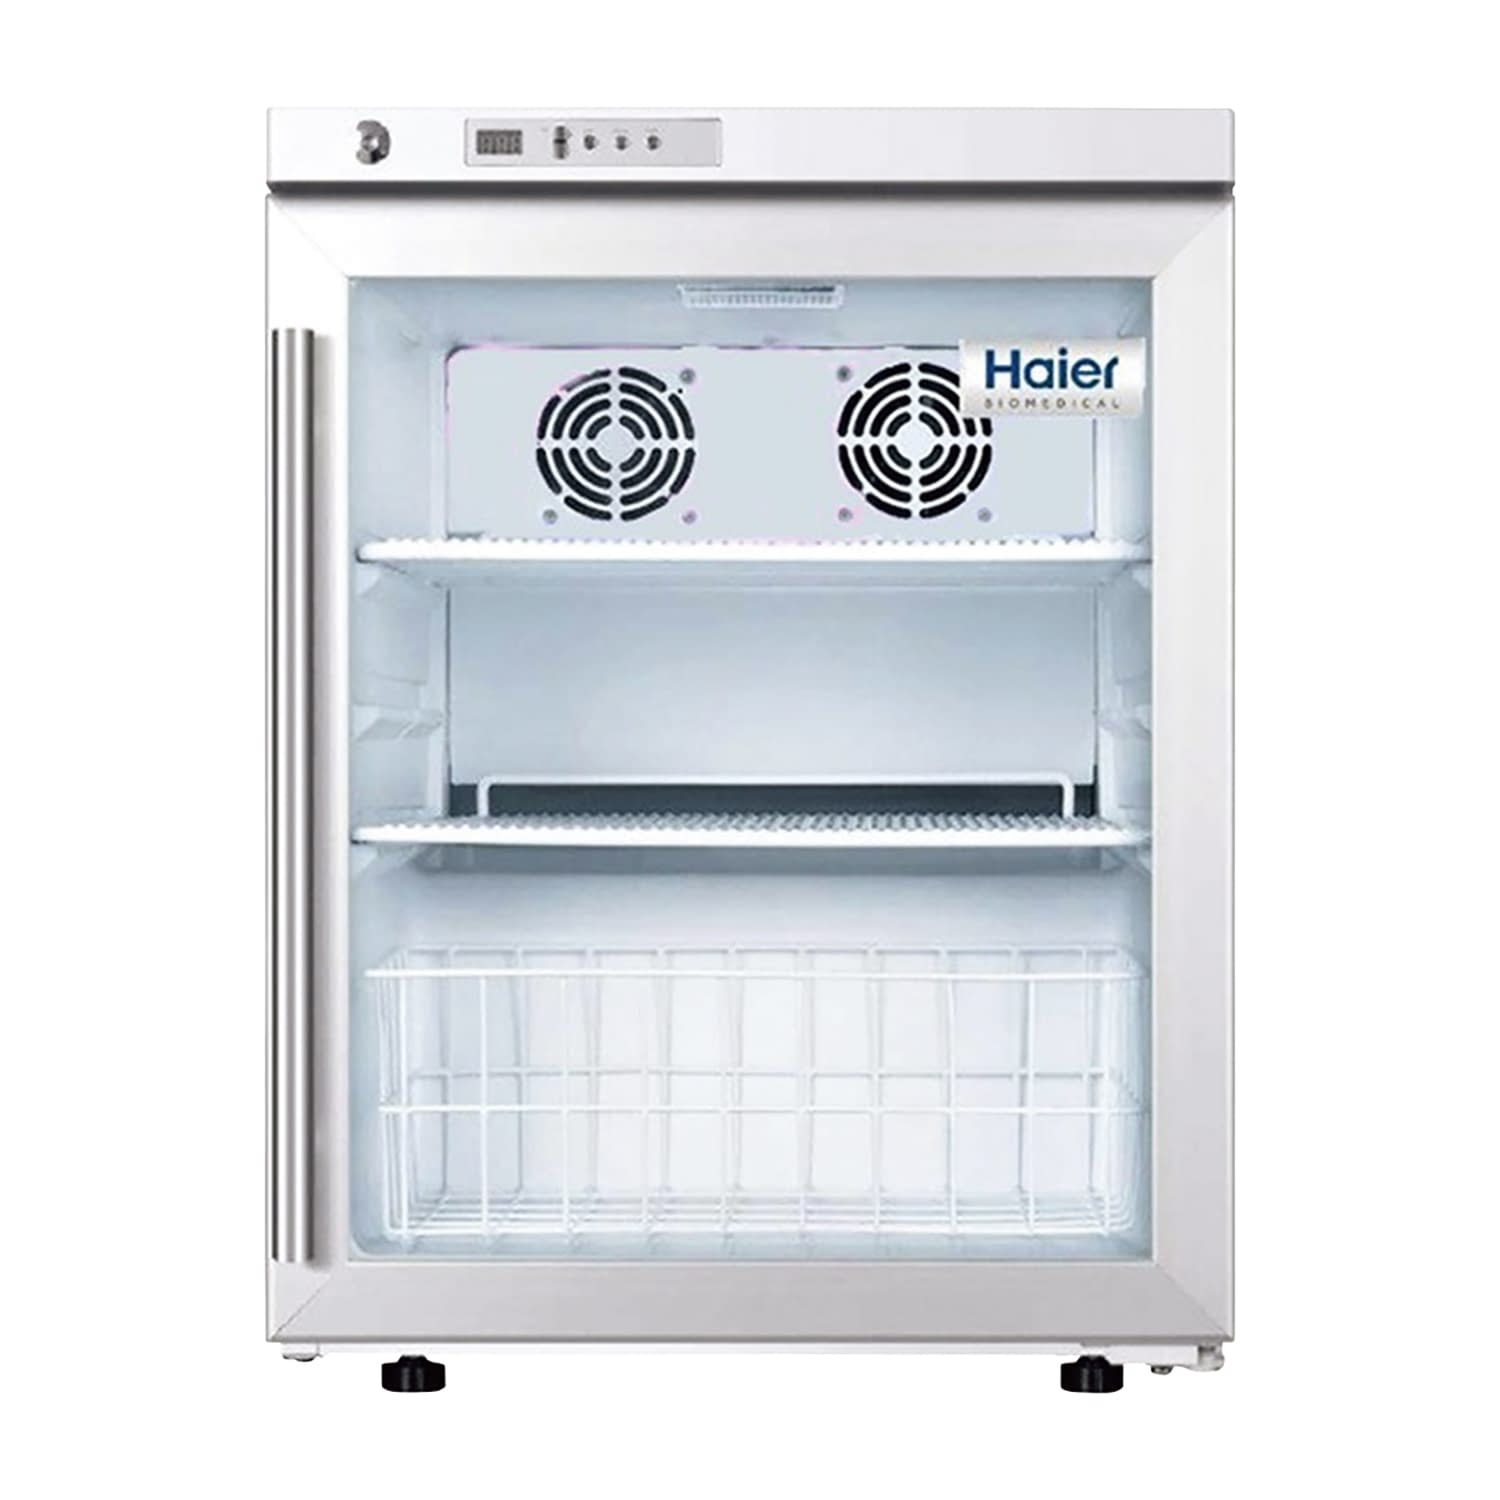 2～8℃薬品冷蔵庫(変圧器付) HYC-68A(60HZ) 1台 Haier Biomedical ホワイト 25-5517-01 保冷庫 検査室 薬用冷蔵ショーケース 冷蔵ショーケース